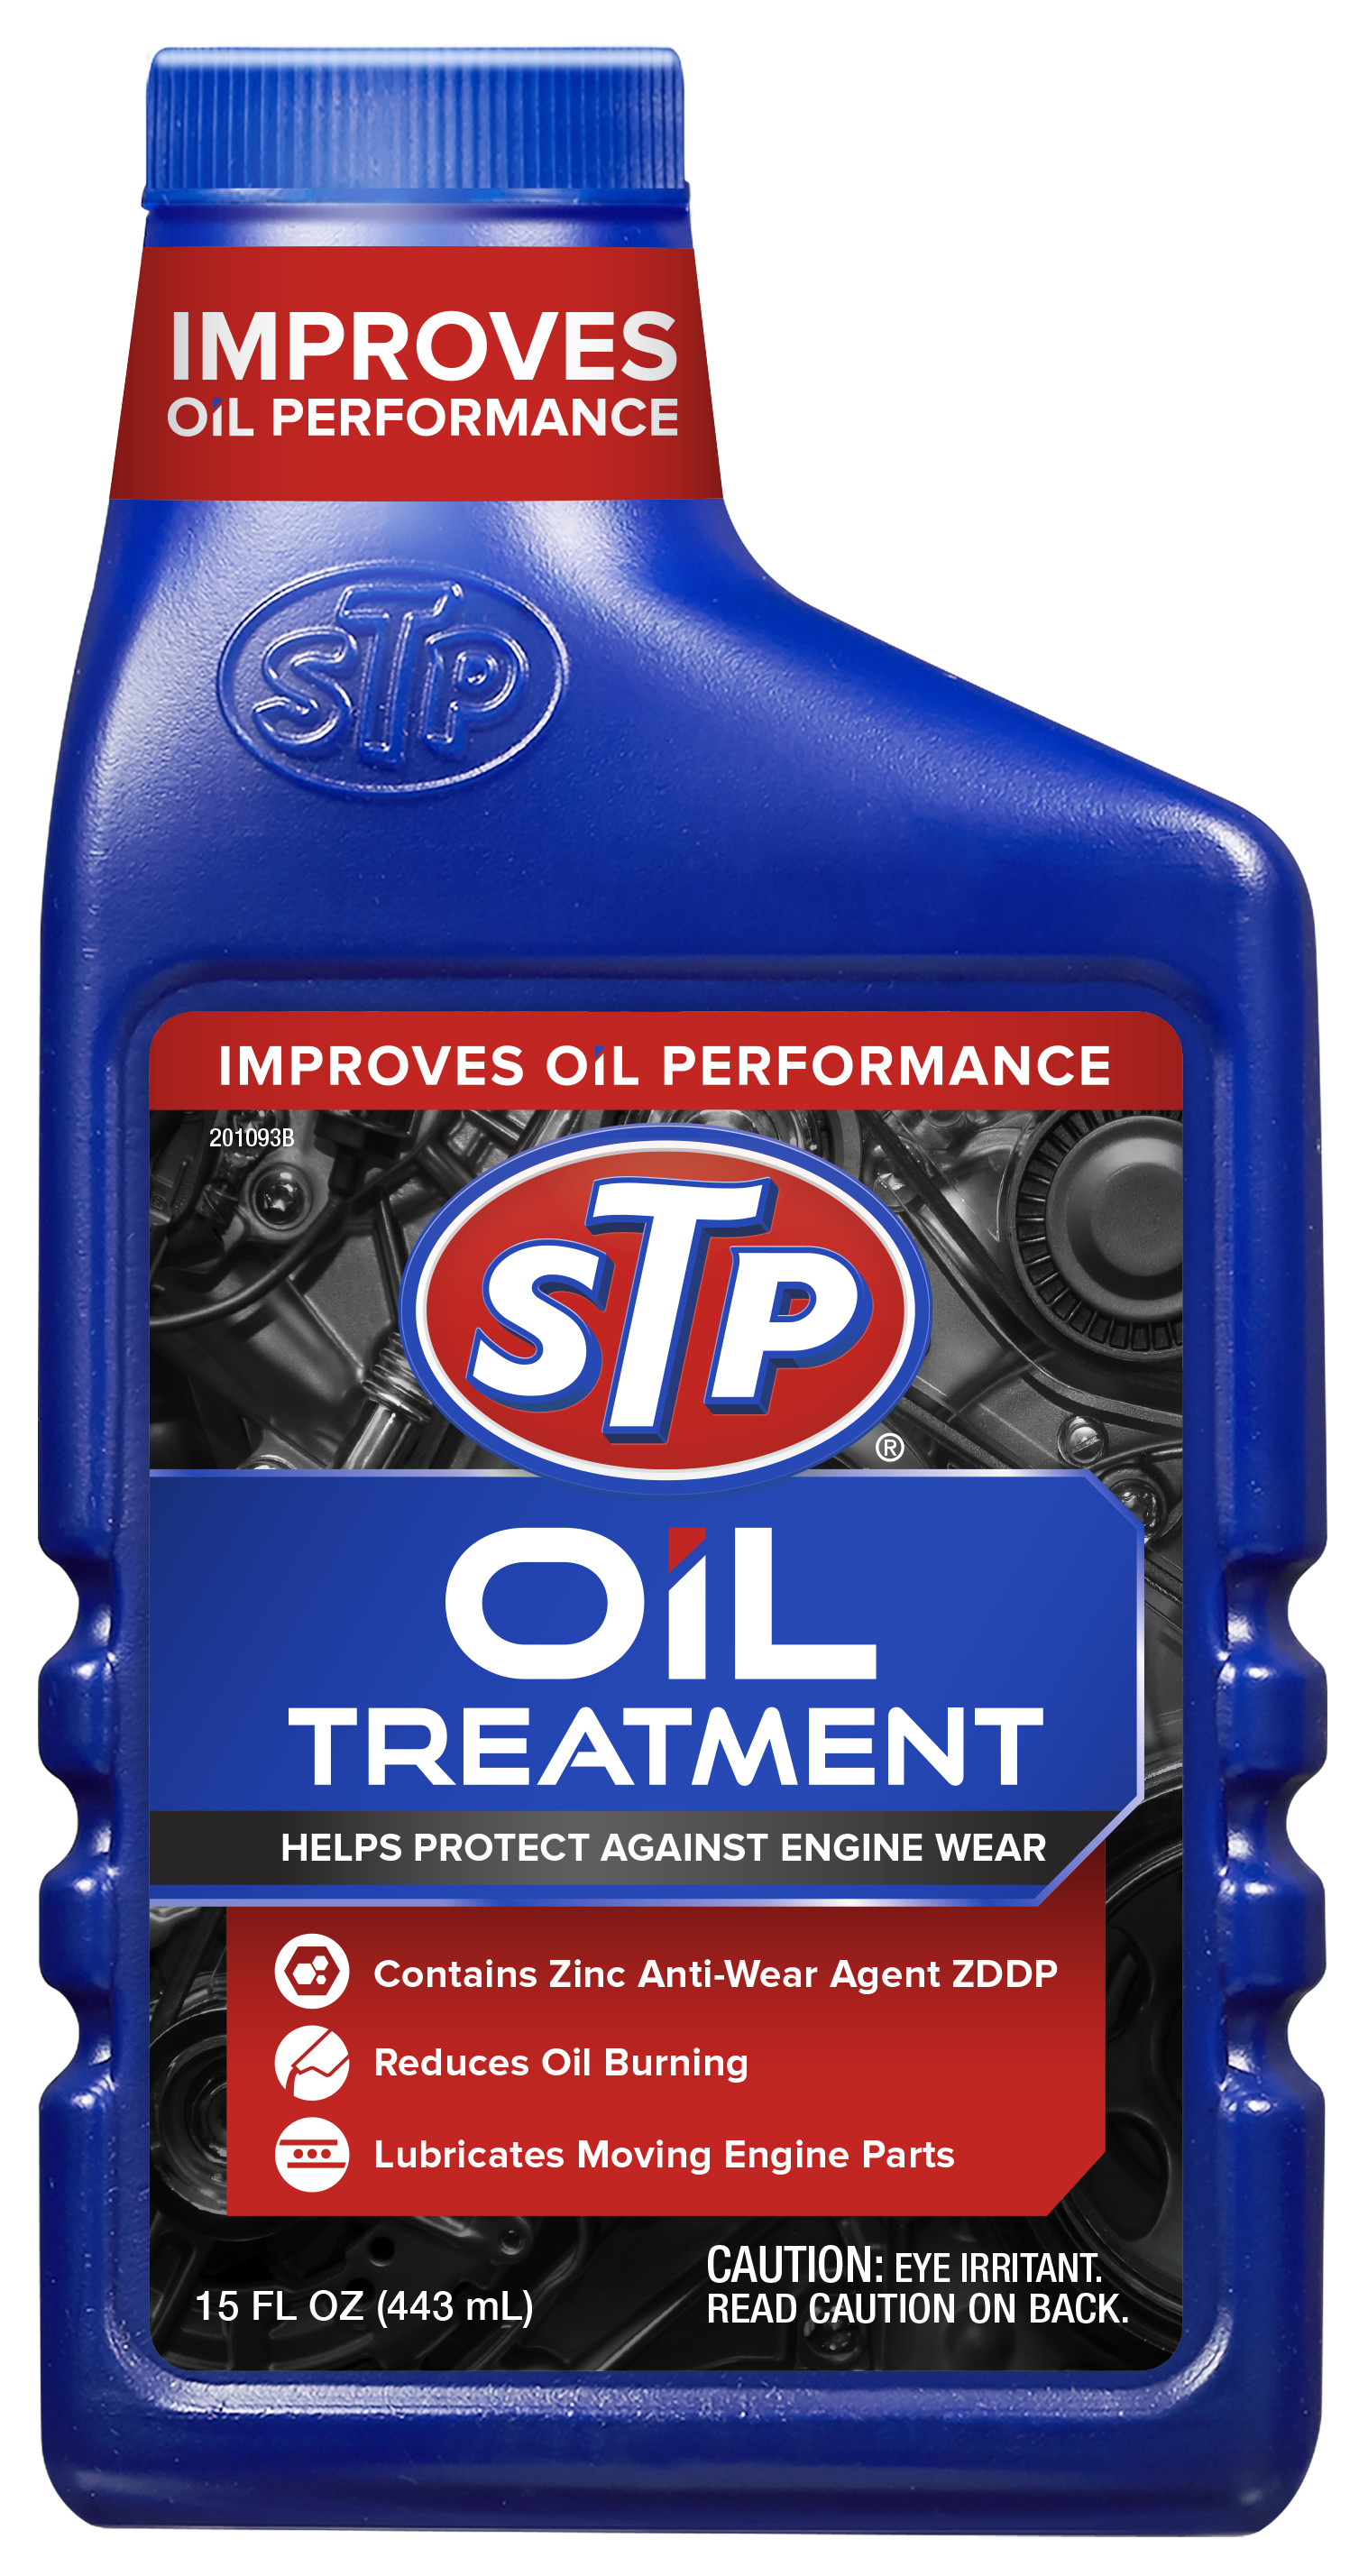 STP High Viscosity Oil Treatment (15 fluid ounces) - image 1 of 10